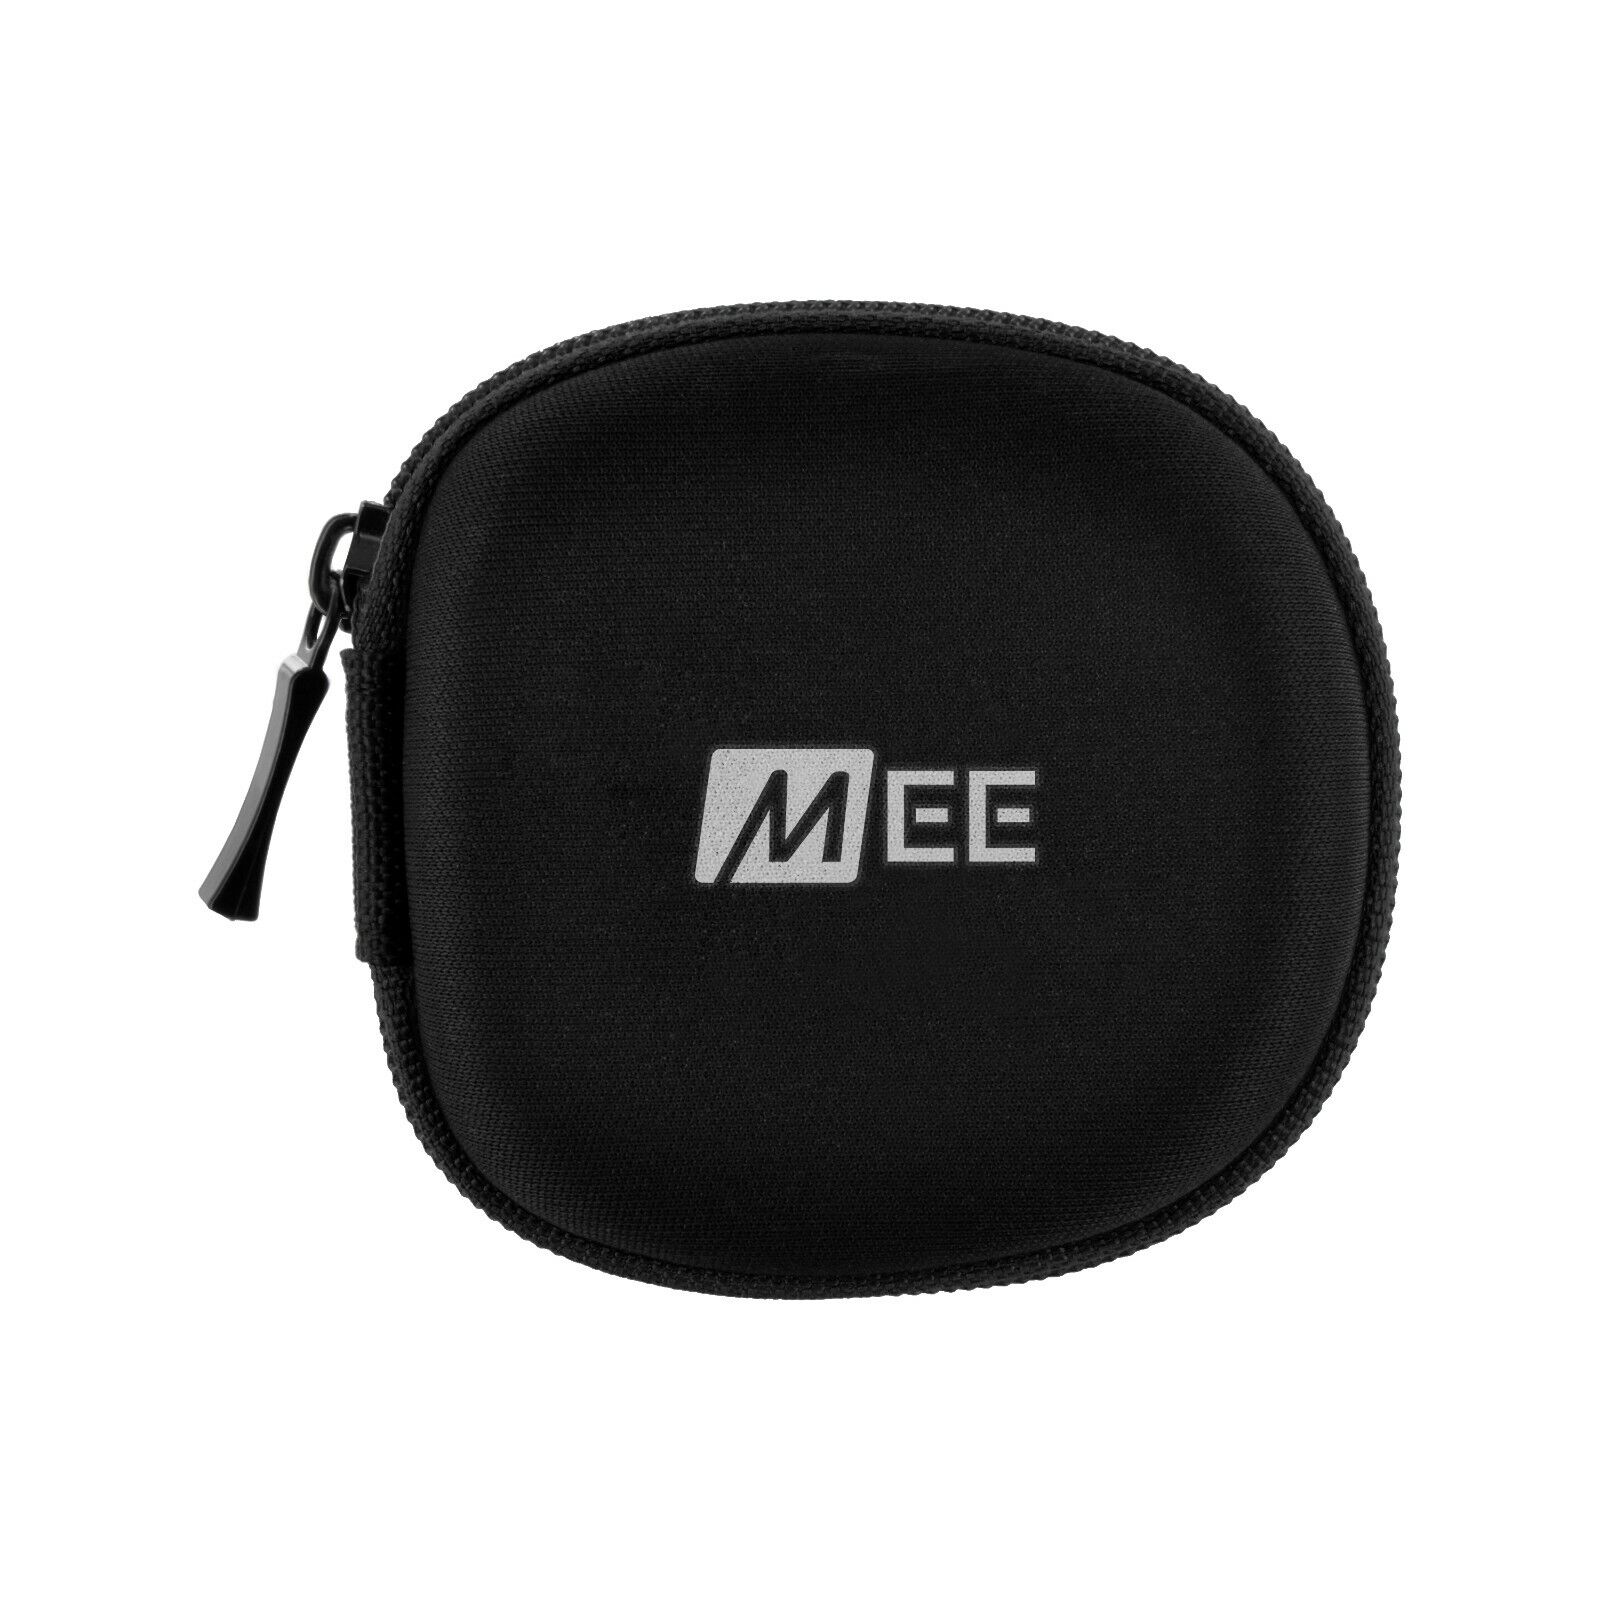 MEE audio M6 In-Ear Sports Headphones